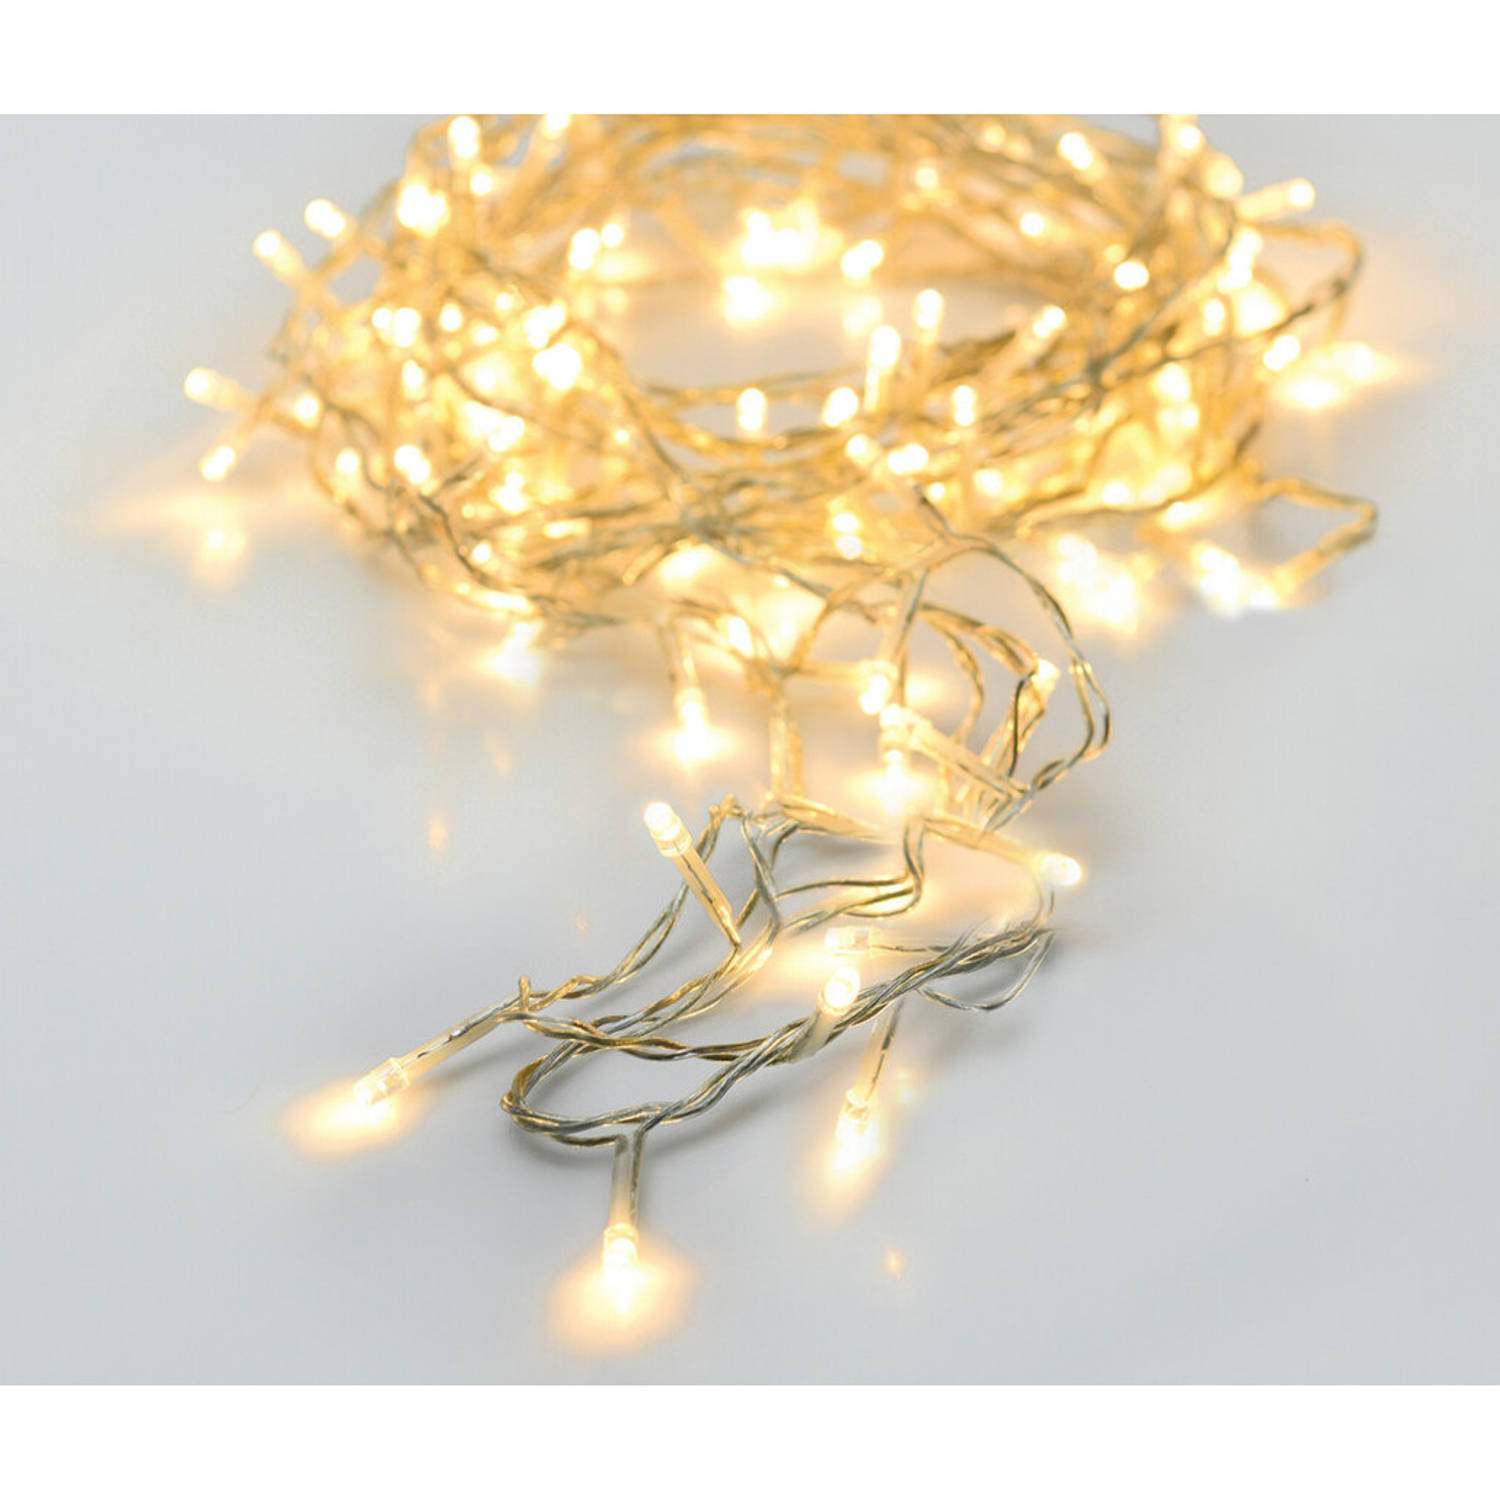 Christmas Decoration lichtsnoeren warm wit -2x -2 m -24 leds- batterij Kerstverlichting kerstboom